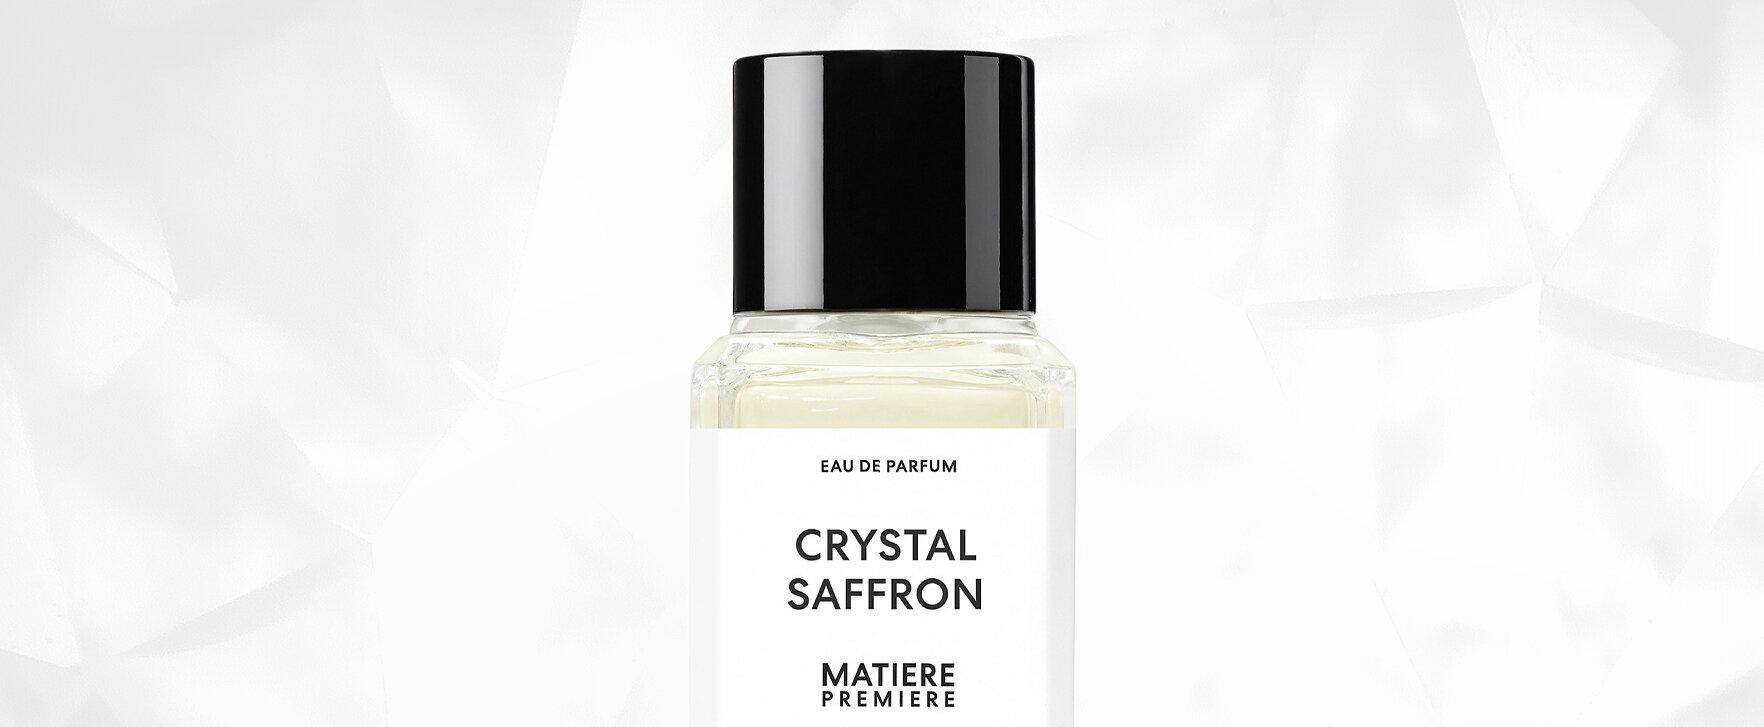 “Crystal Saffron” - New Creation of the Label Matière Première by Aurélien Guichard